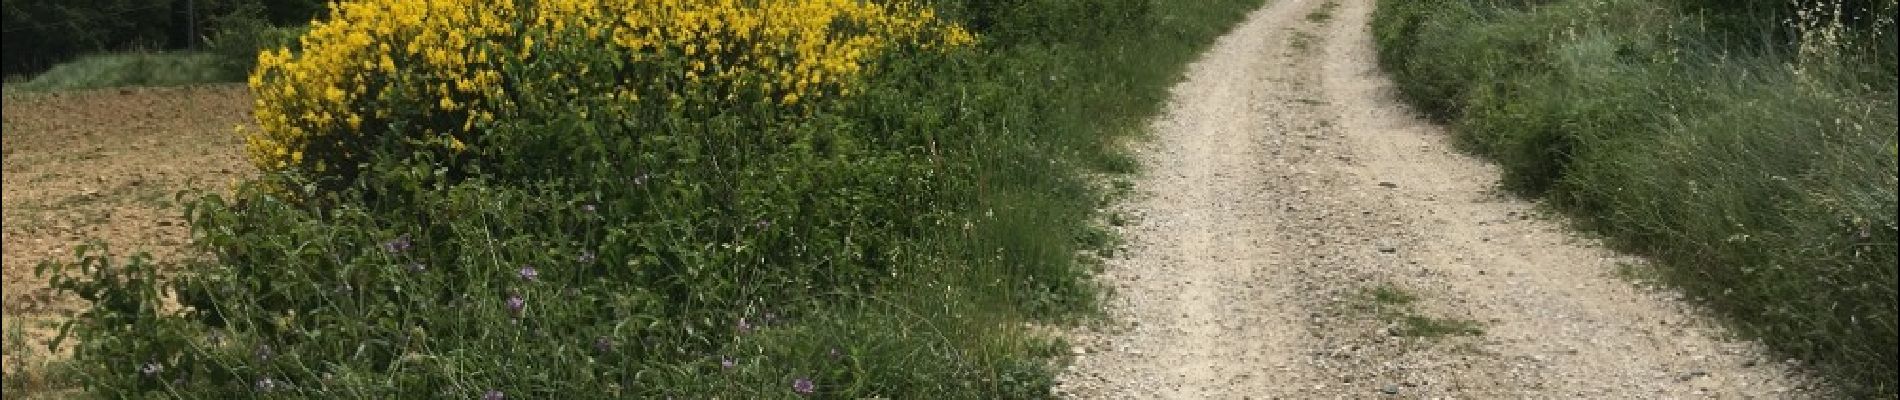 POI Saint-Marcel-d'Ardèche - la route se transforme en chemin de terre - Photo